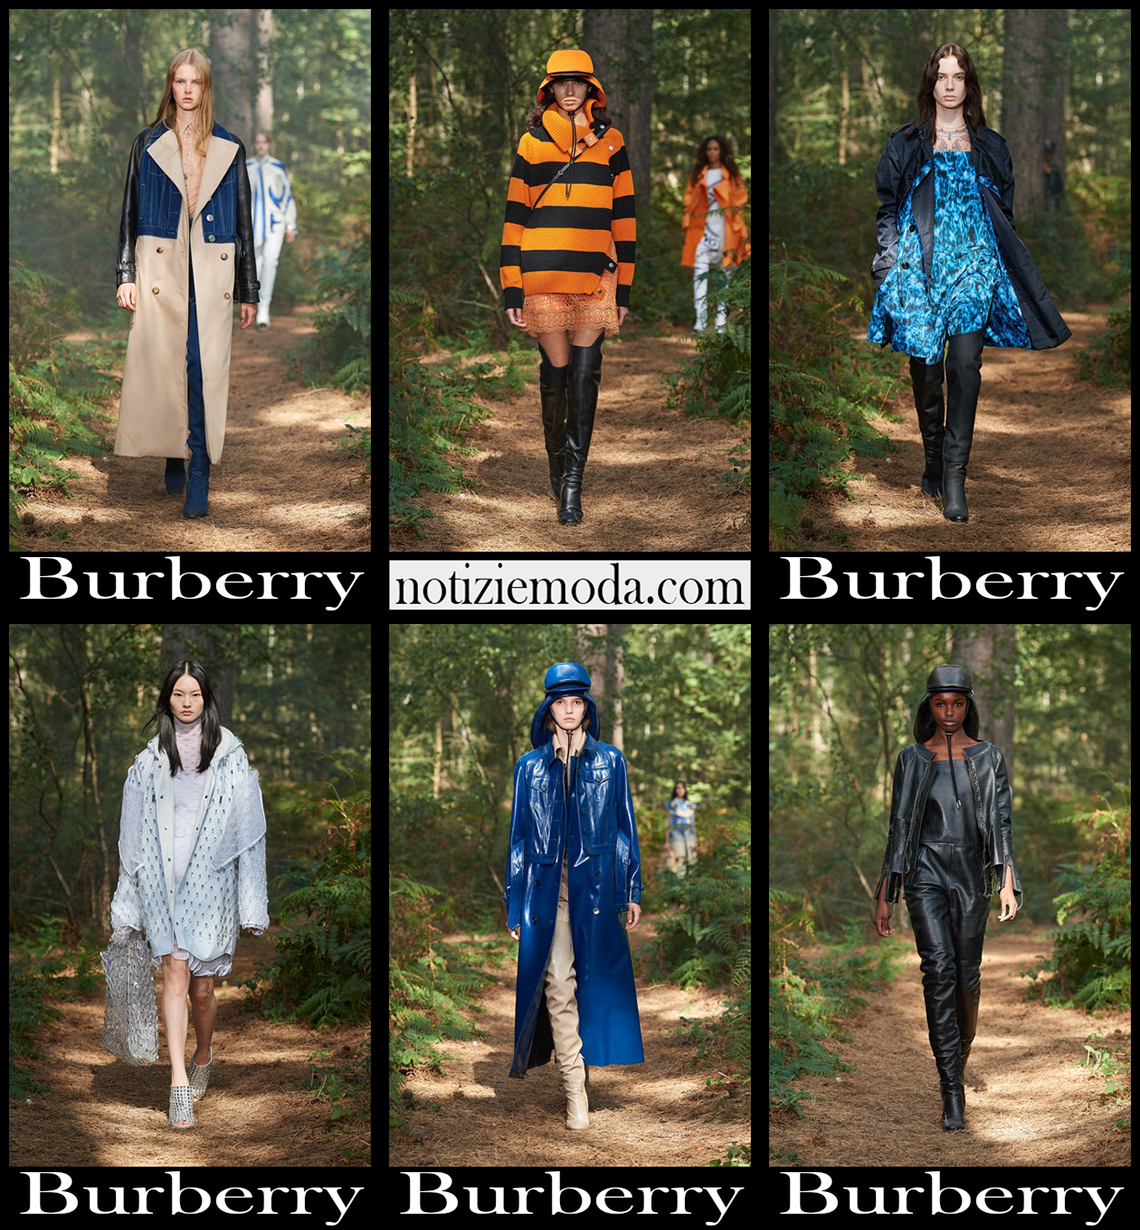 Collezione Burberry primavera estate 2021 moda donna